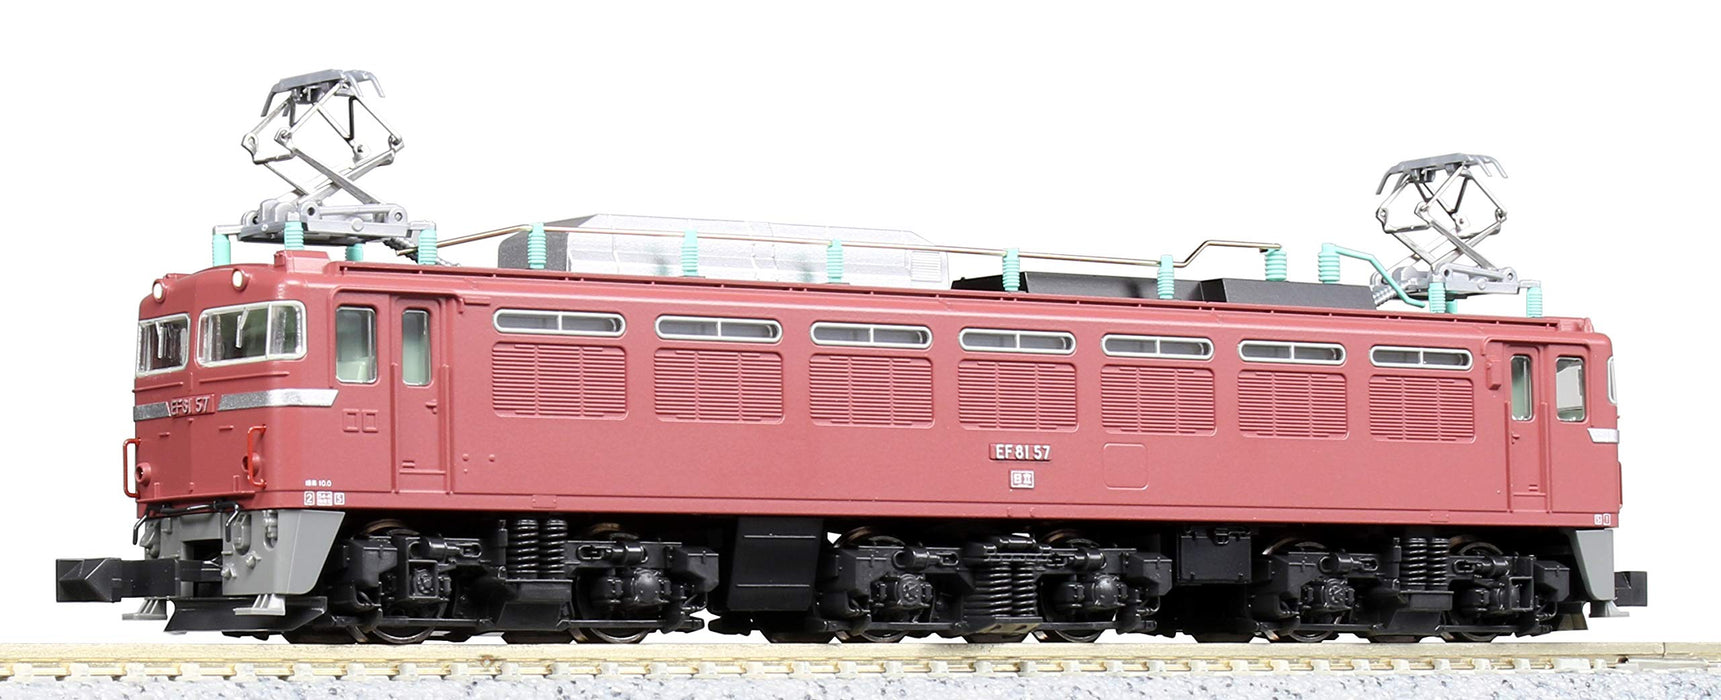 Kato N Gauge 3066-1 Electric Locomotive Model - Ef81 General Color